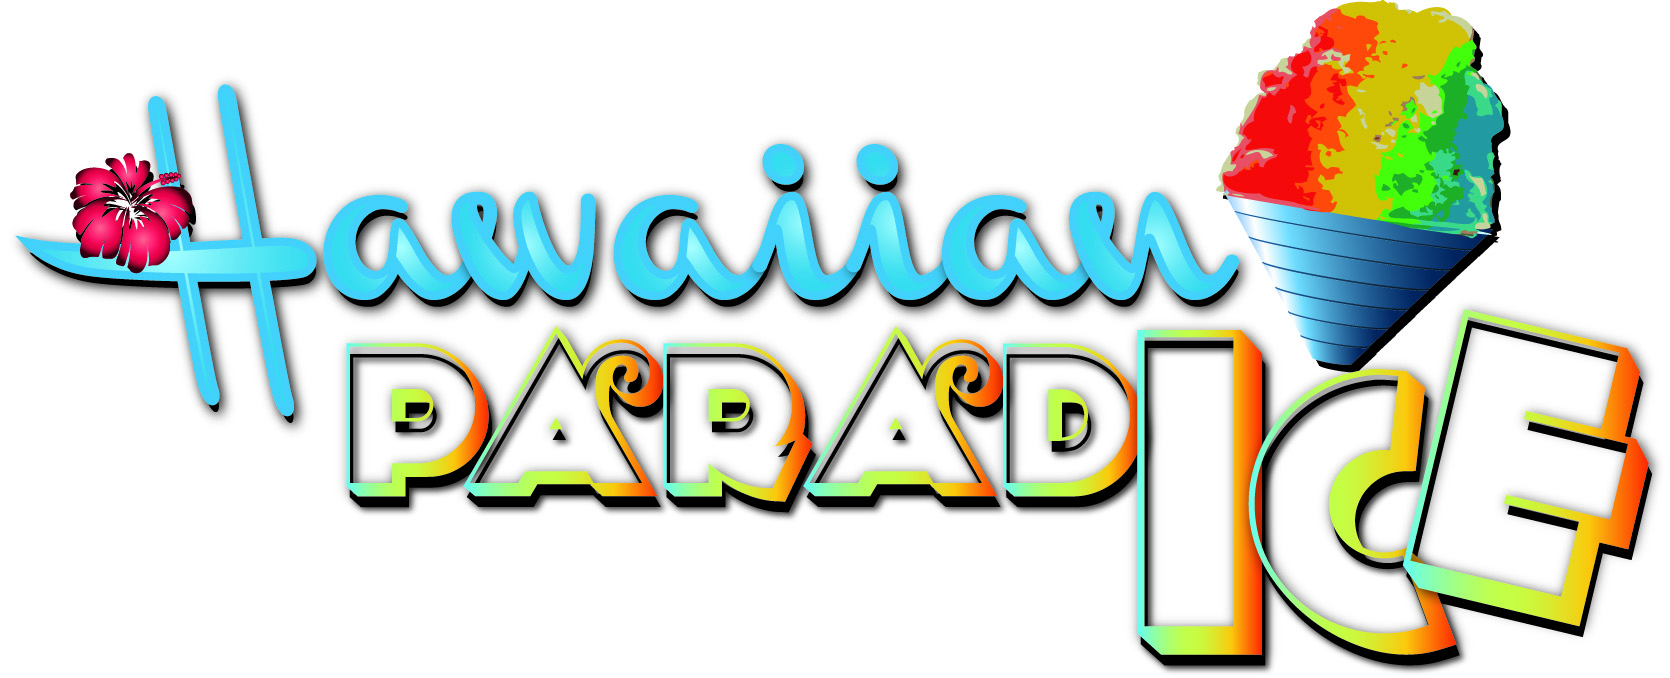 Hawaiian Paradice